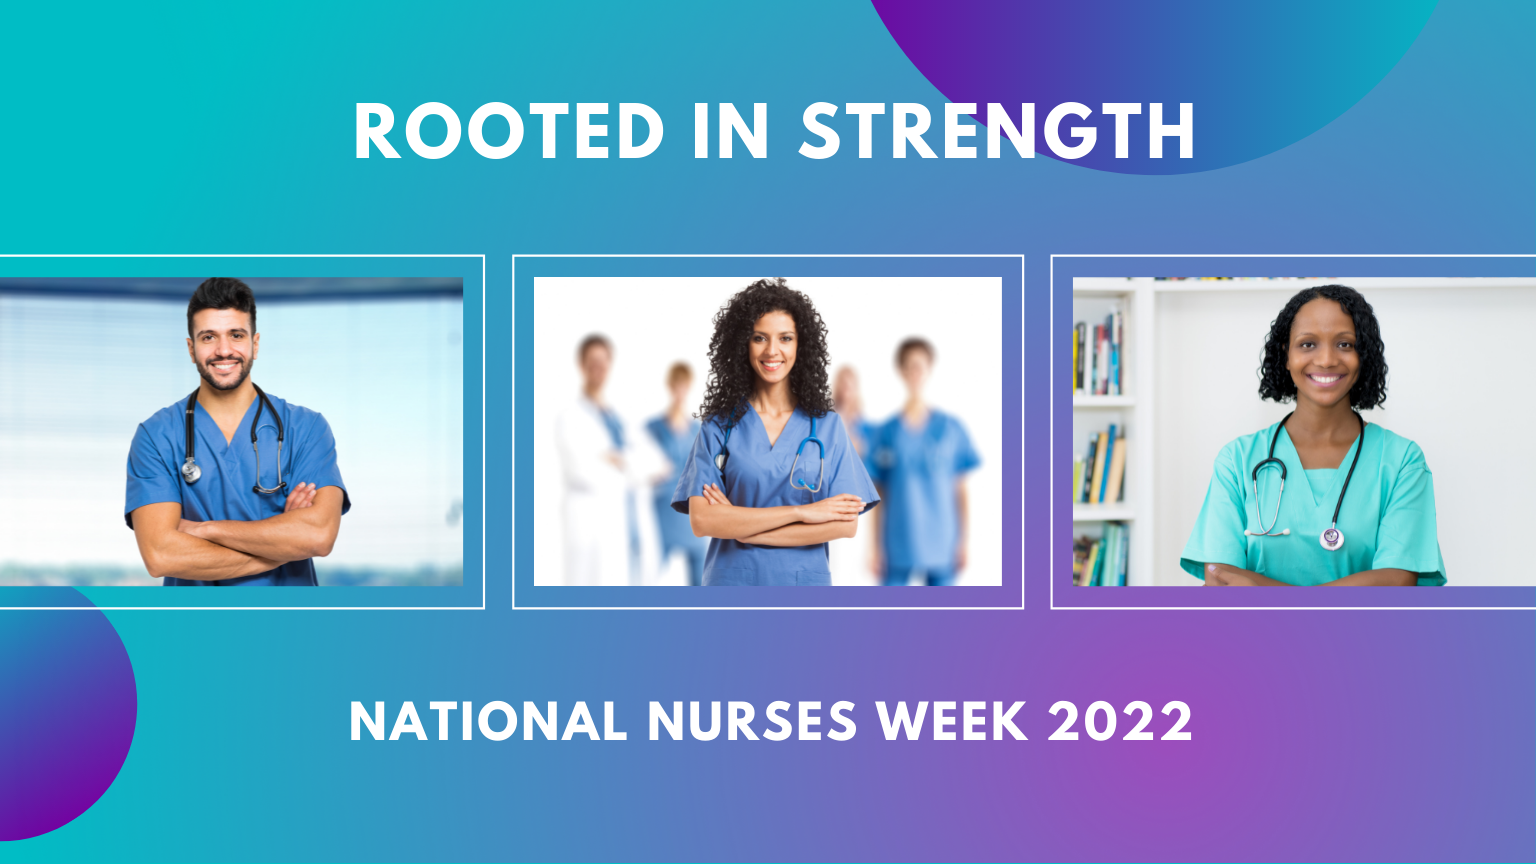 Rooted in Strength 
National Nurses Week 2022